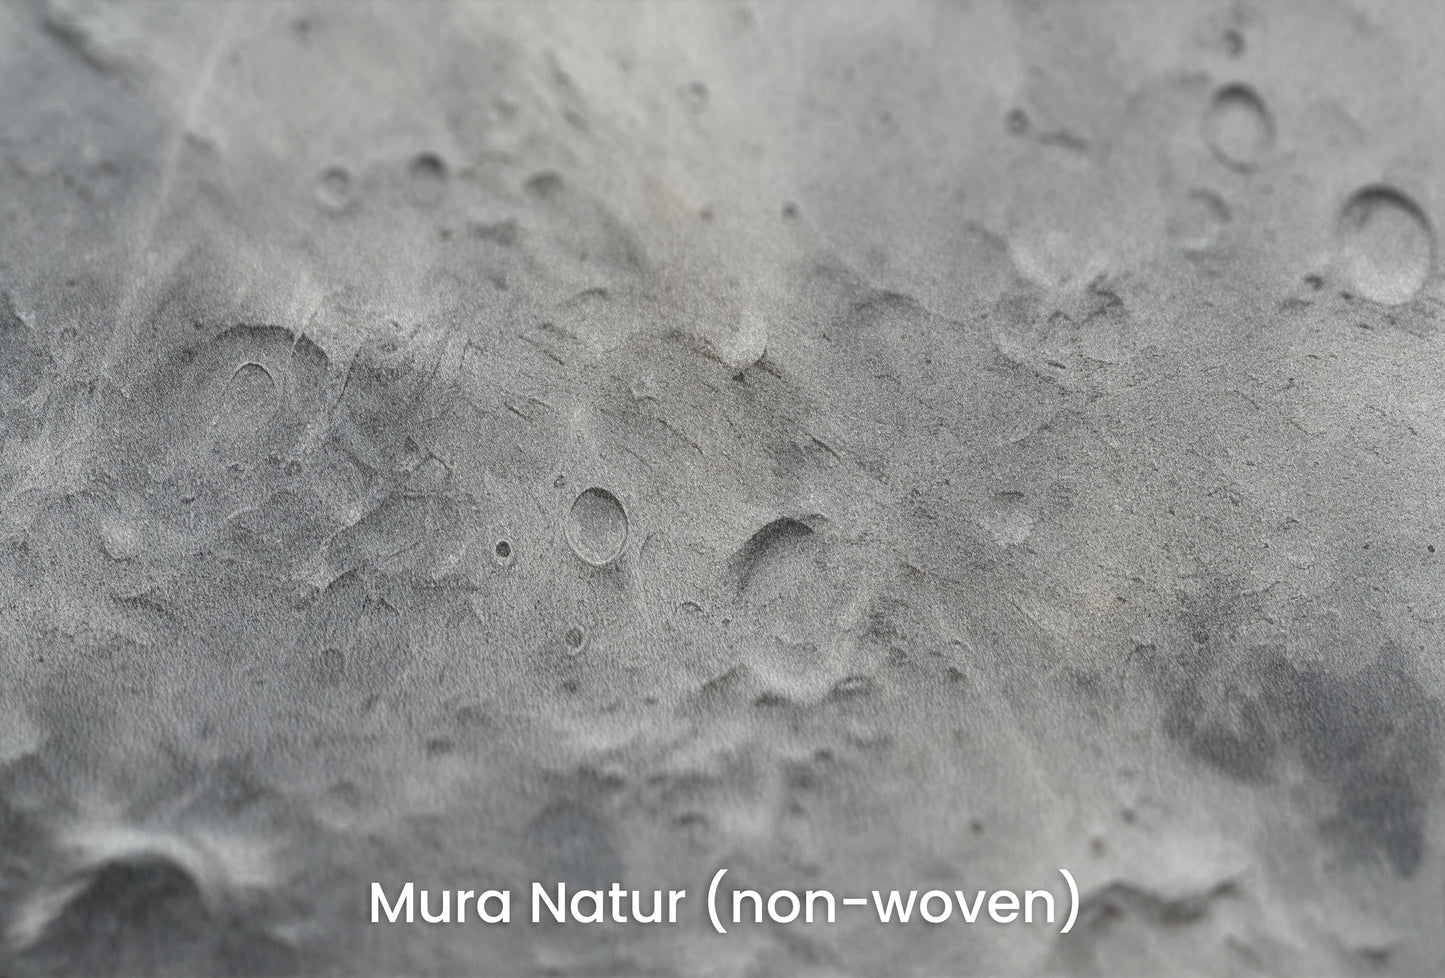 Zbliżenie na artystyczną fototapetę o nazwie Lunar Craters na podłożu Mura Natur (non-woven) - naturalne i ekologiczne podłoże.